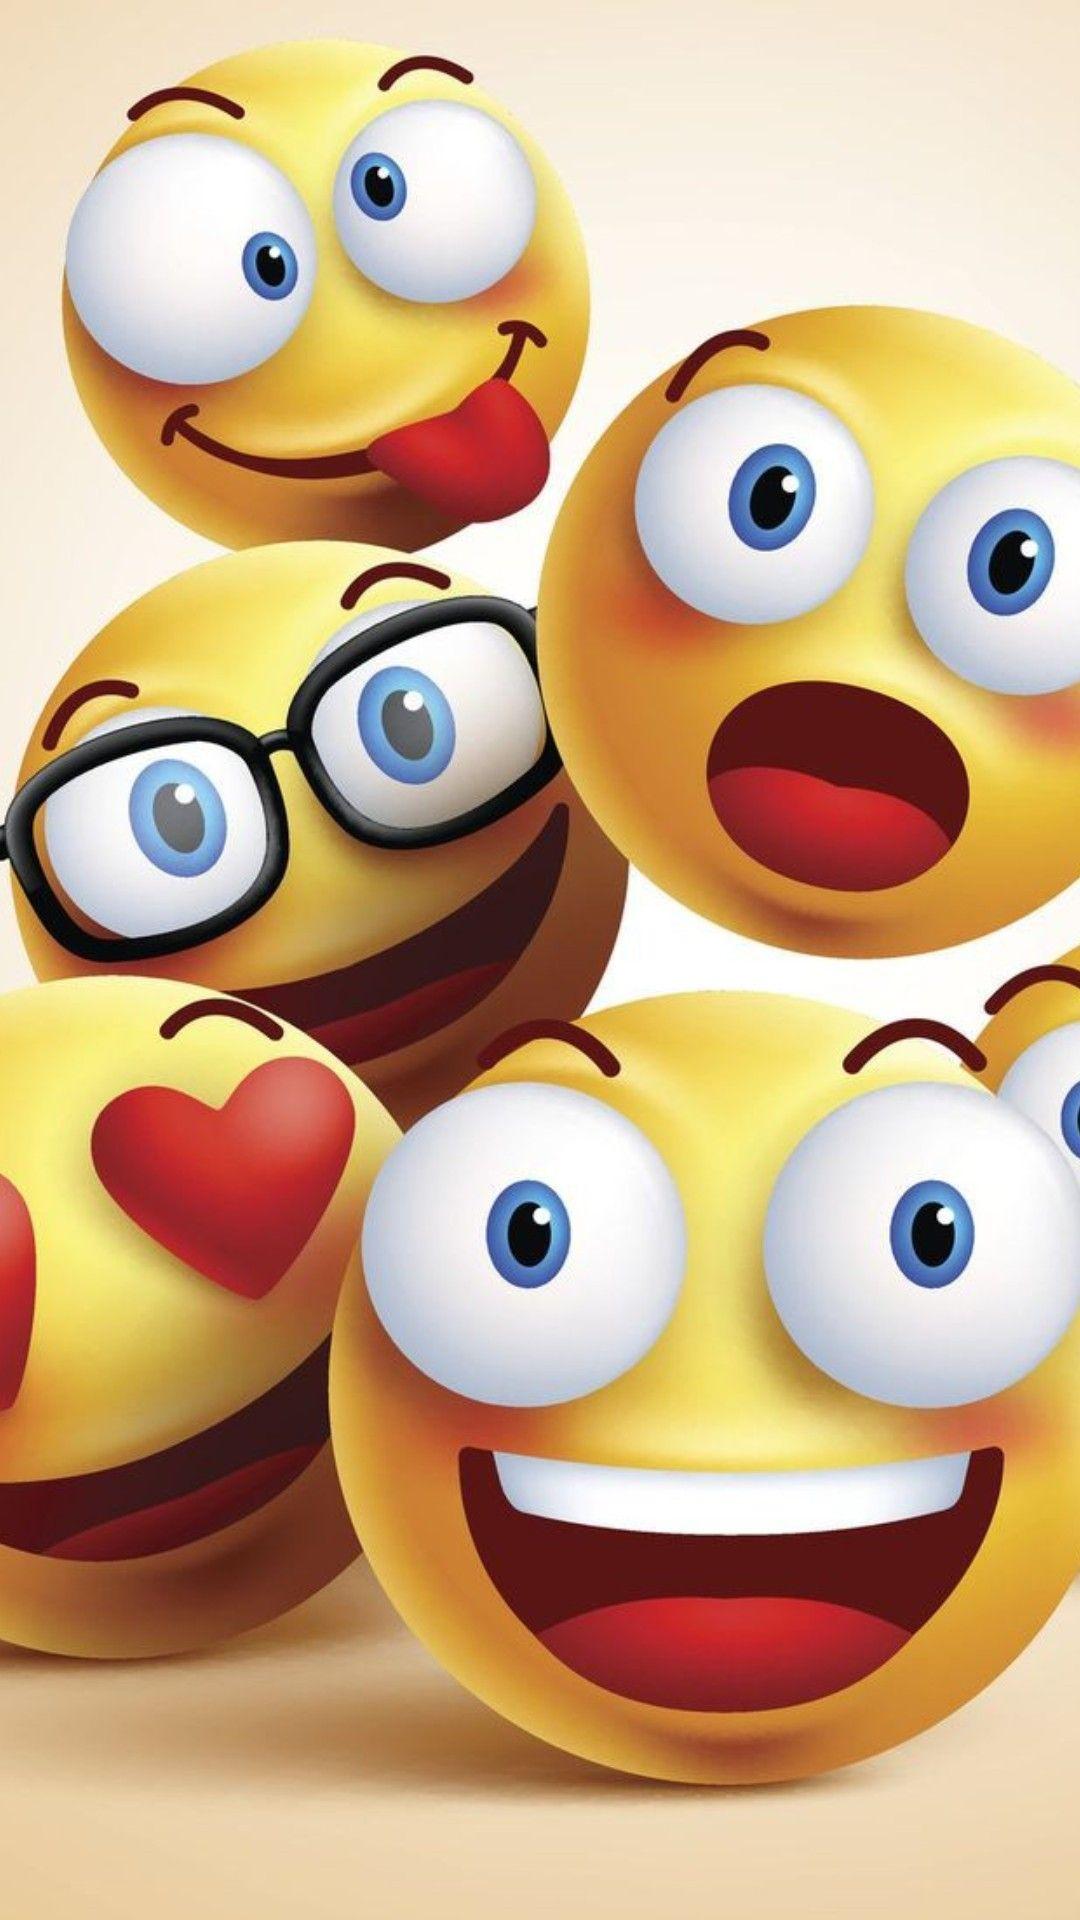 Emoji iPhone Wallpapers  Wallpaper Cave